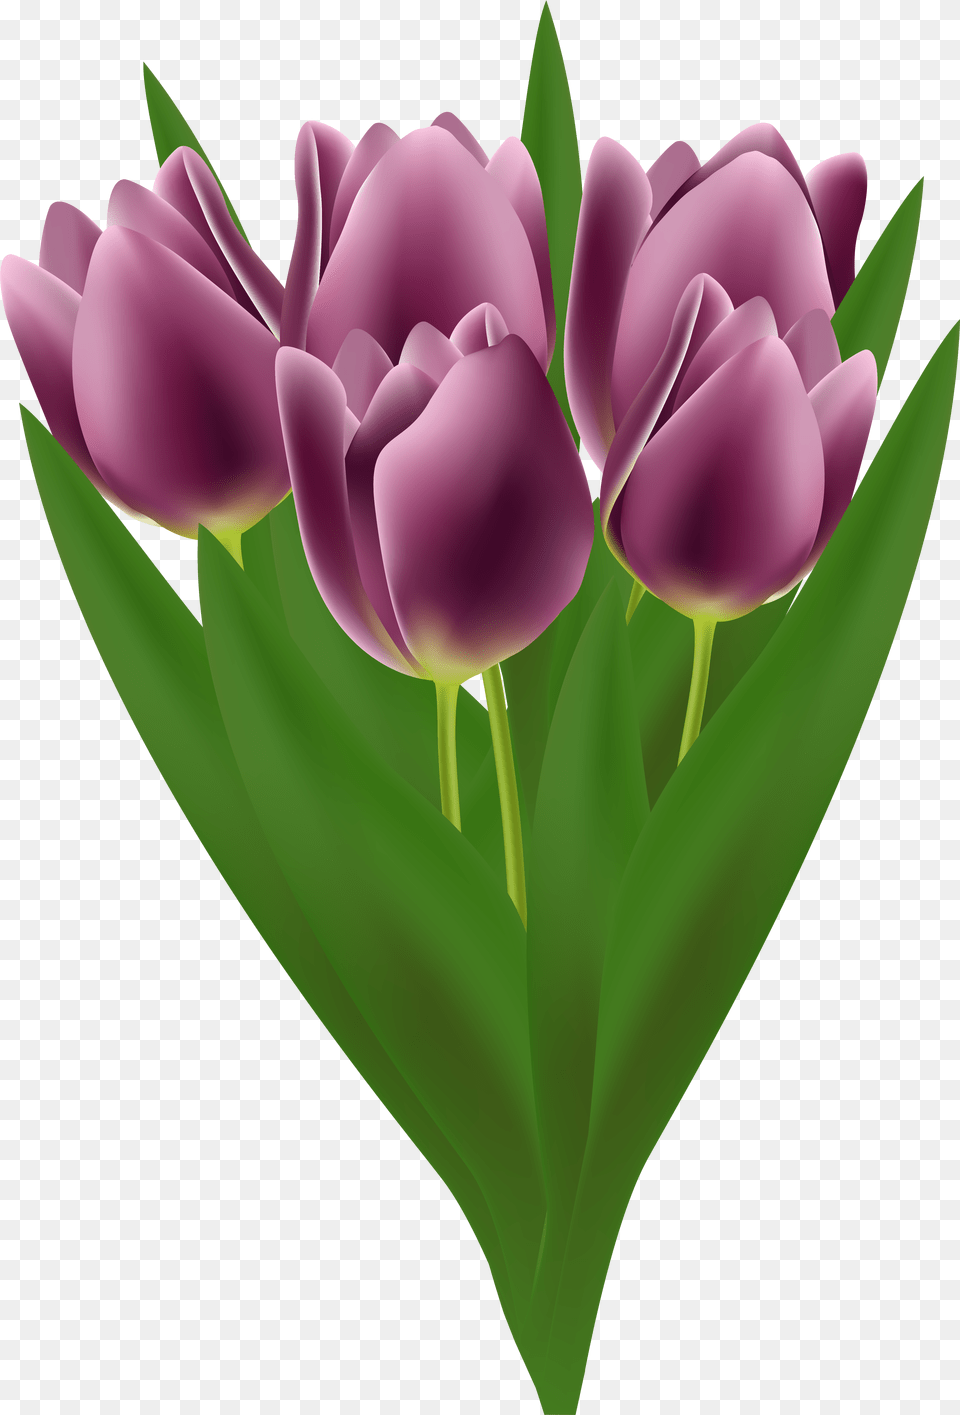 Tulips Bouquet Transparent Clip Art Tulip, Flower, Plant Png Image